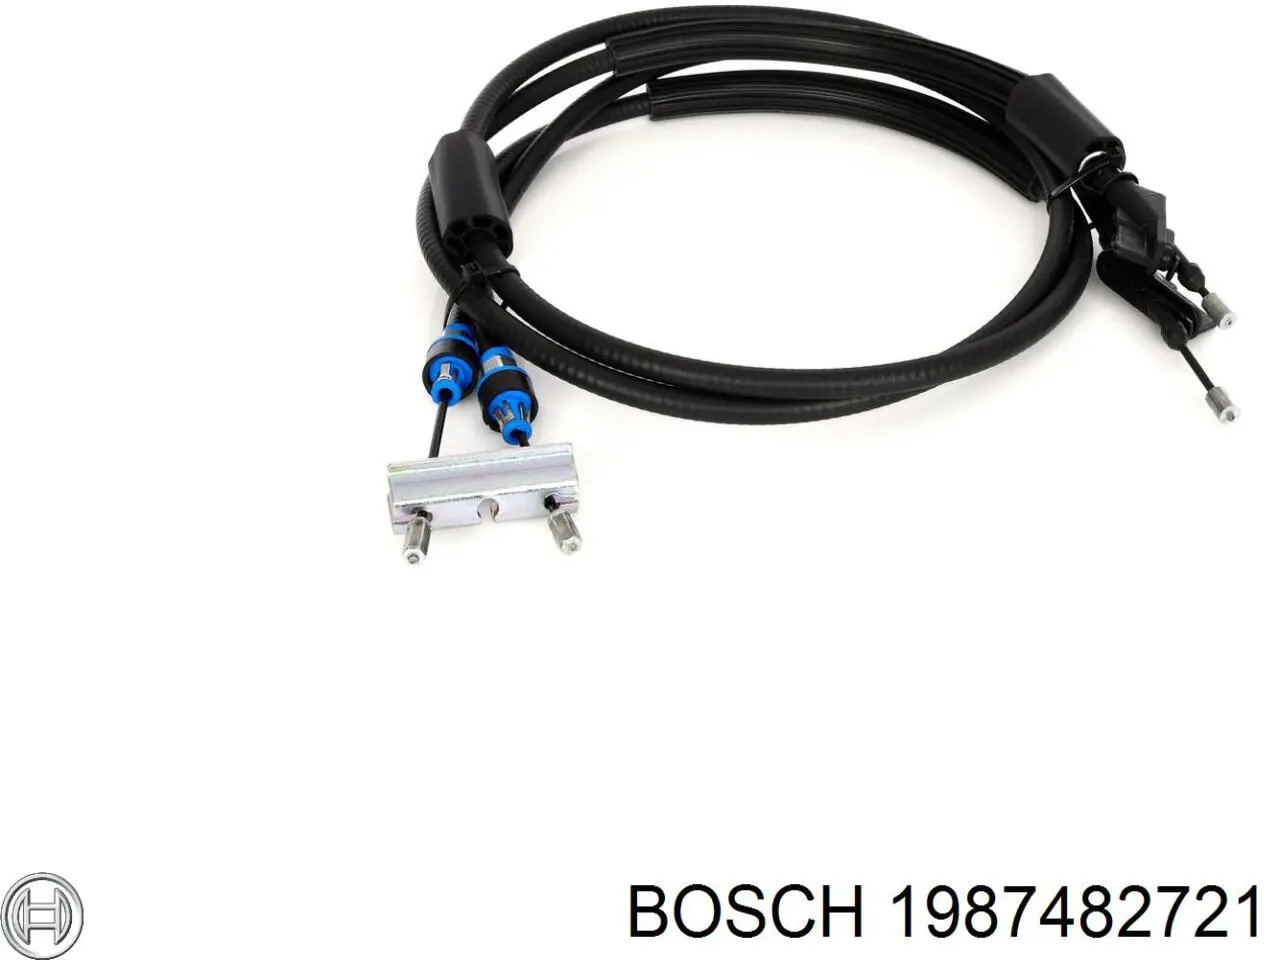 1987482721 Bosch cable de freno de mano trasero derecho/izquierdo